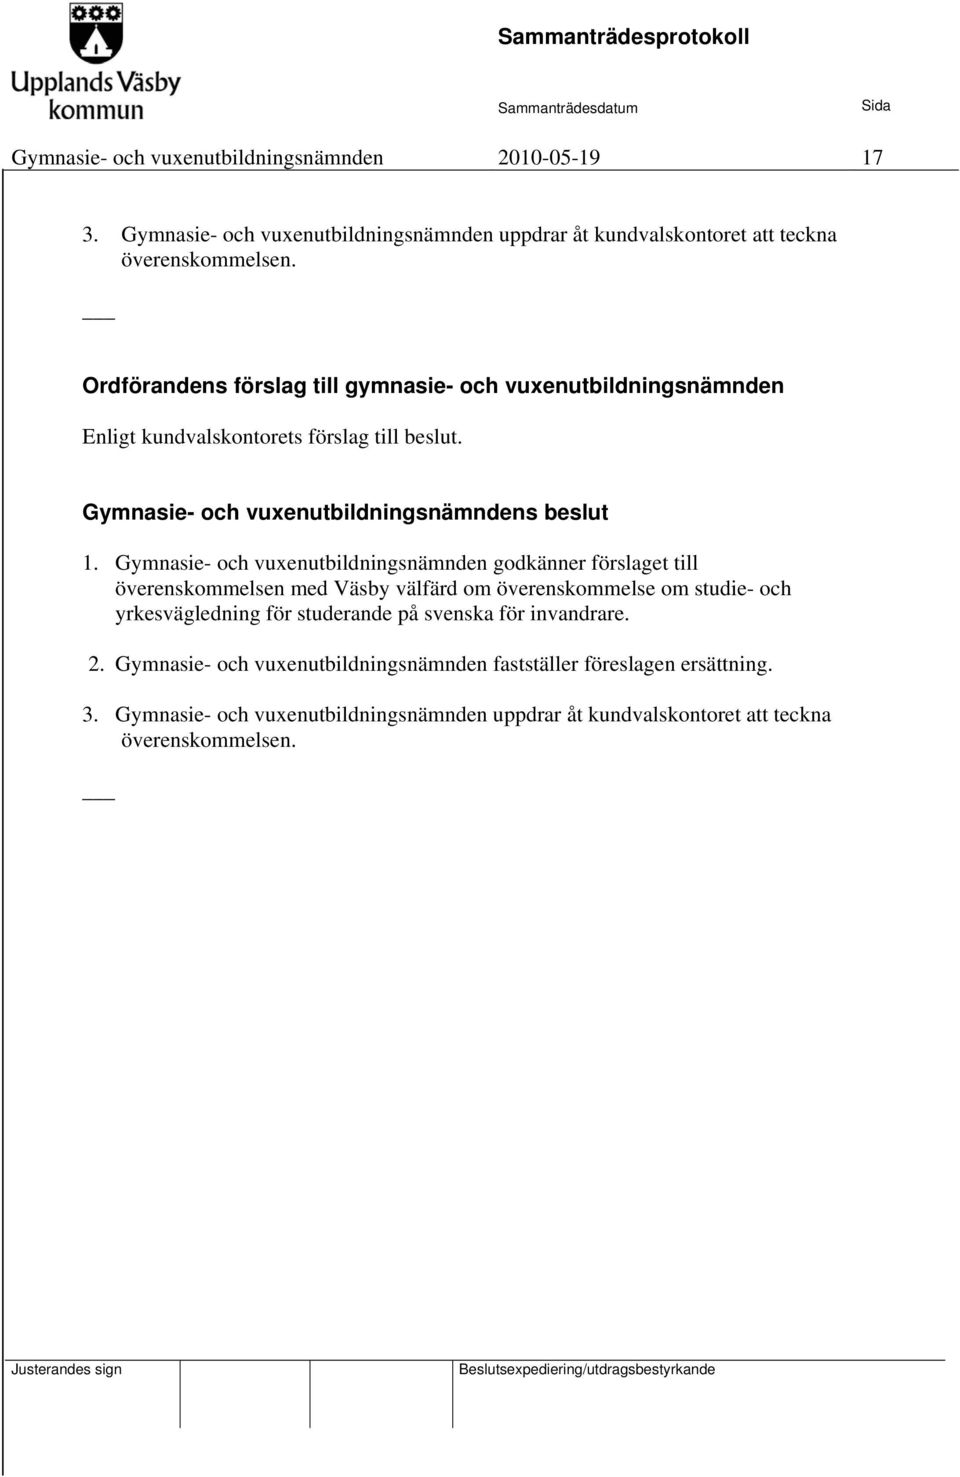 Gymnasie- och vuxenutbildningsnämnden godkänner förslaget till överenskommelsen med Väsby välfärd om överenskommelse om studie- och yrkesvägledning för studerande på